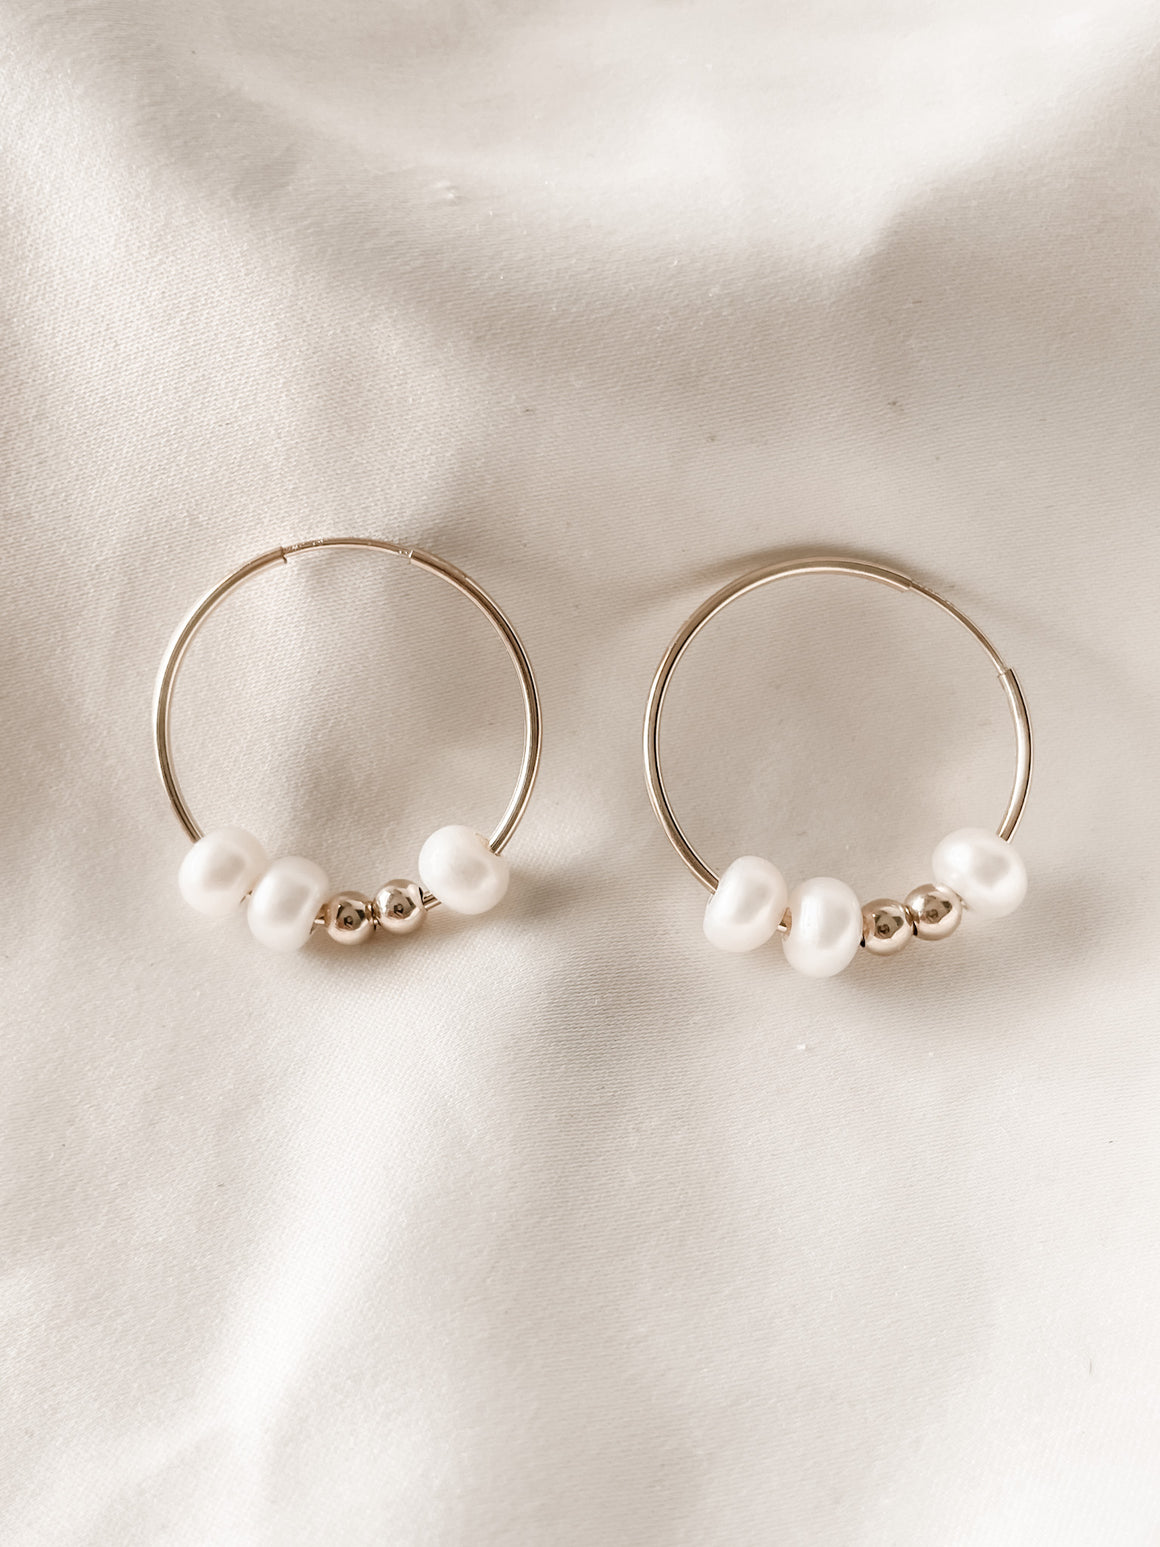 Rhotonite earrings